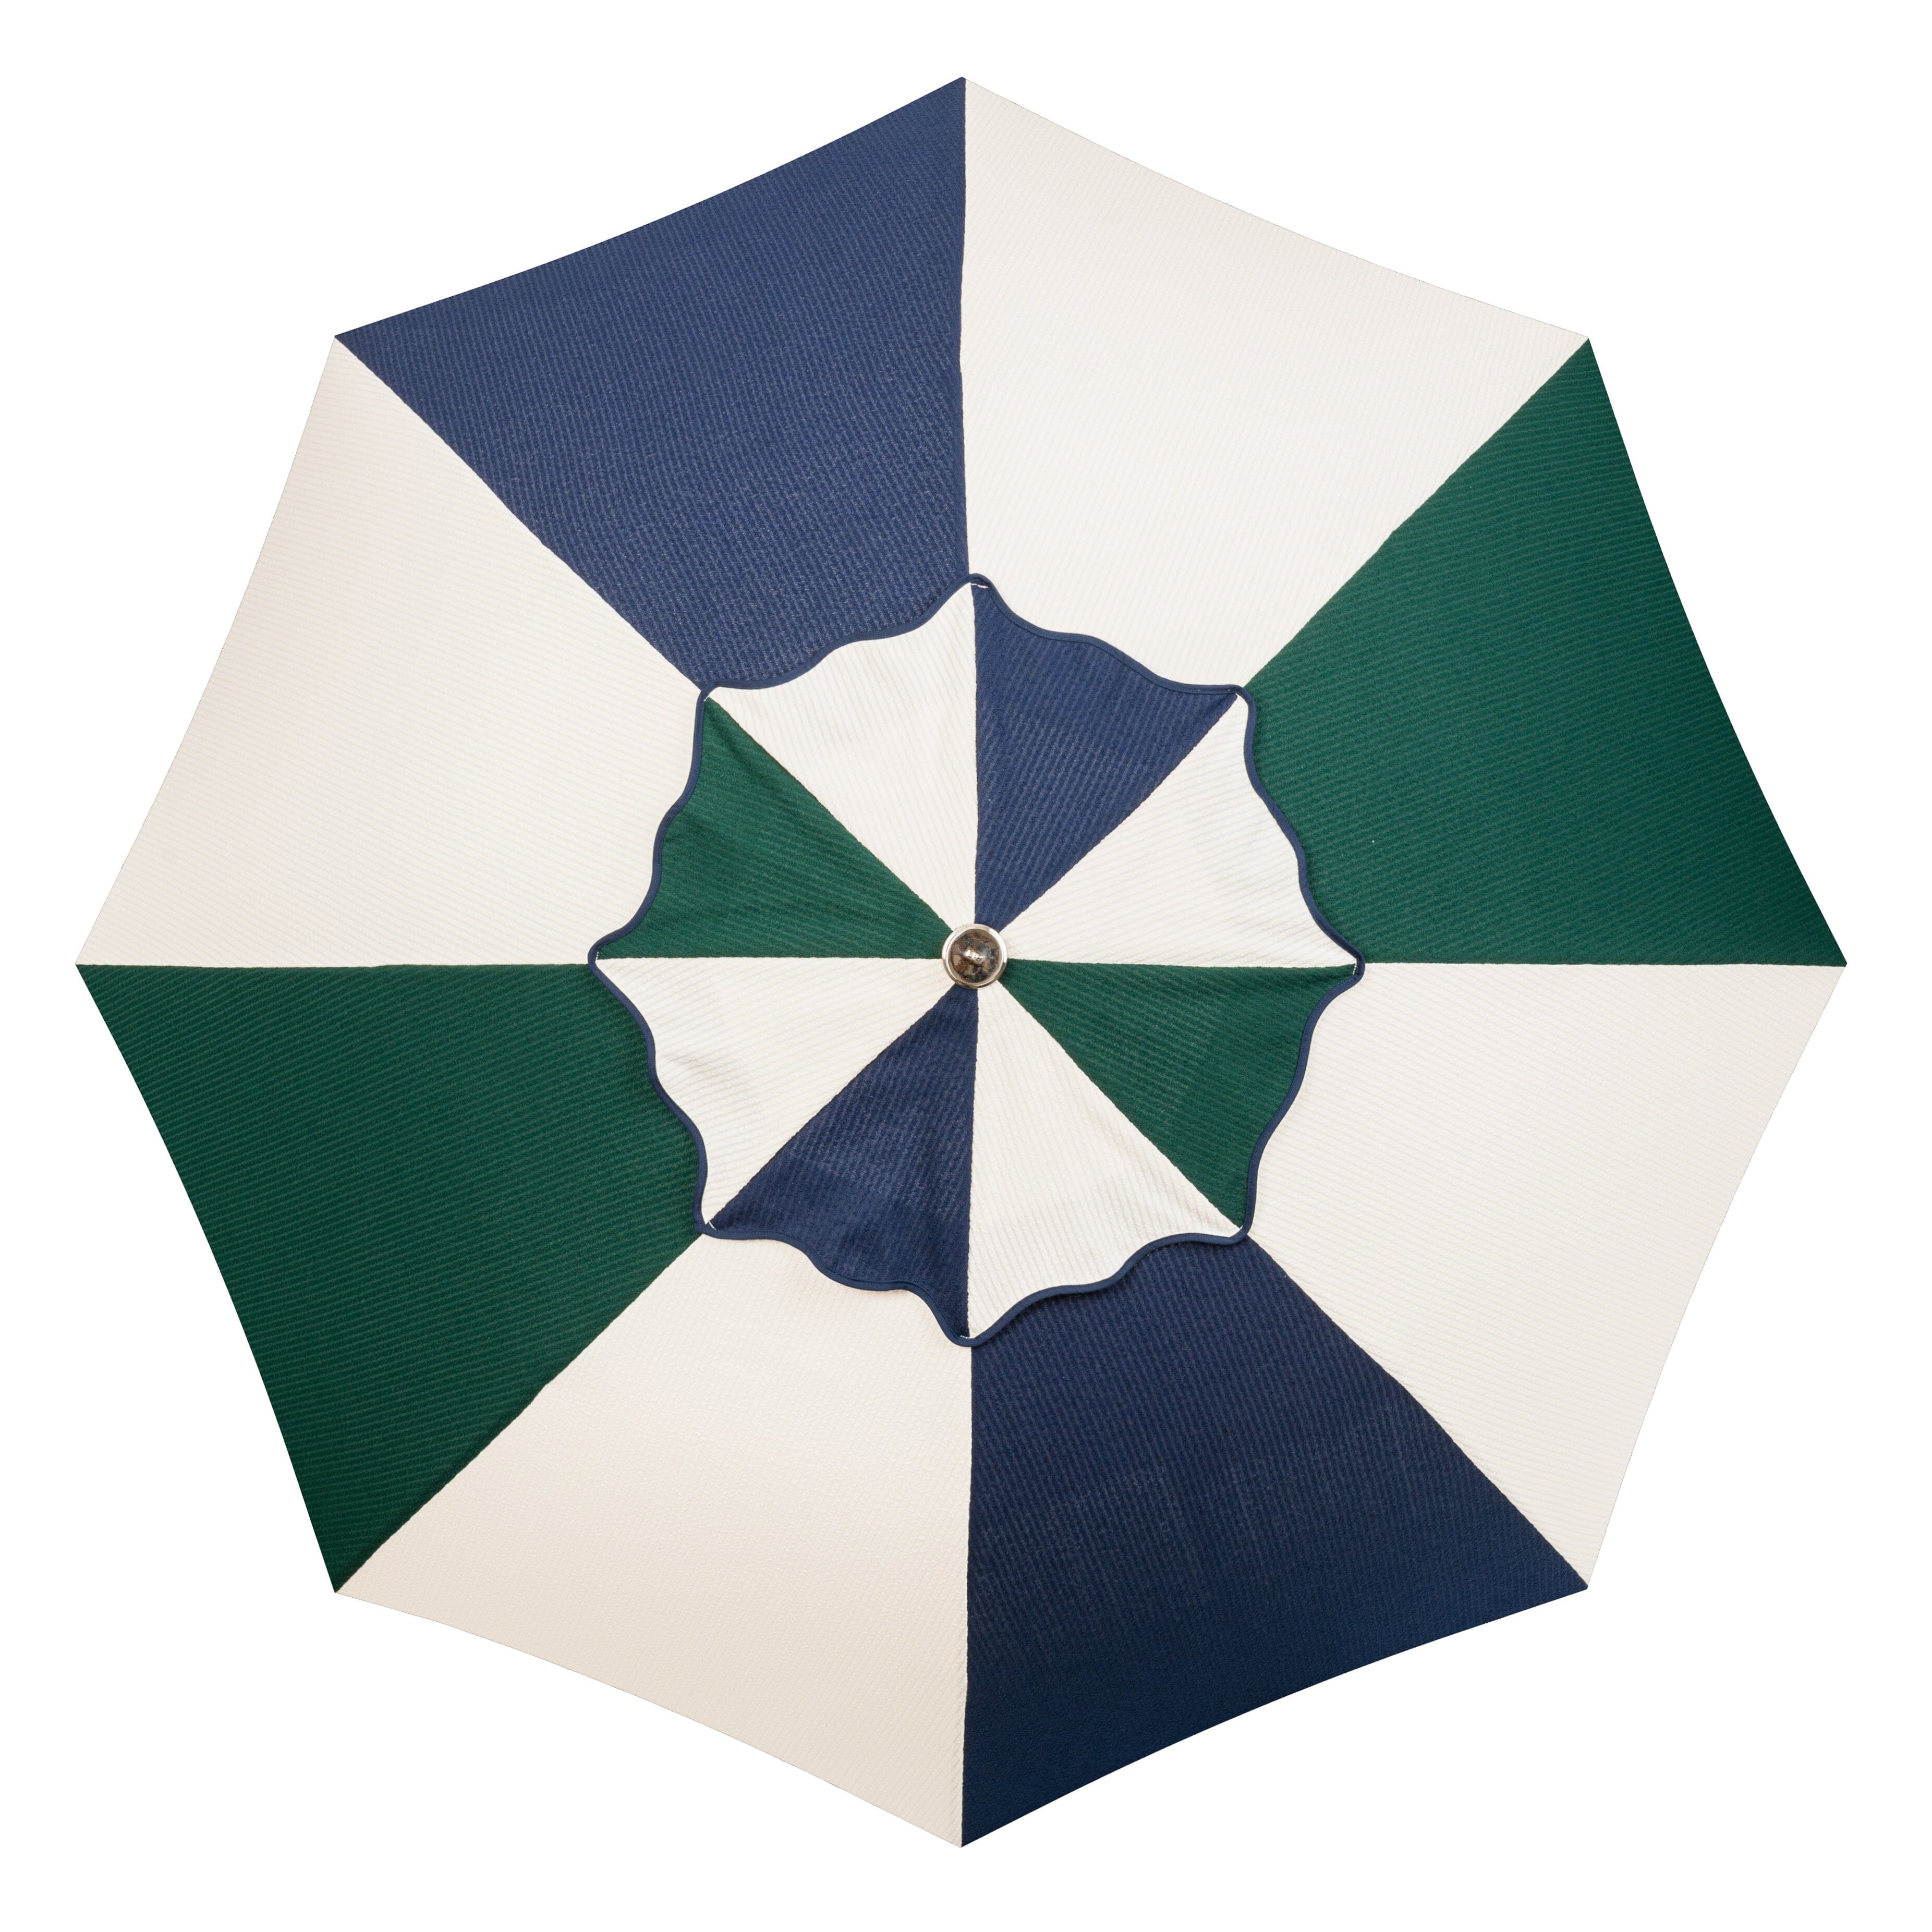 The Patio Umbrella - Corduroy College Cinque Patio Umbrella Business & Pleasure Co Aus 